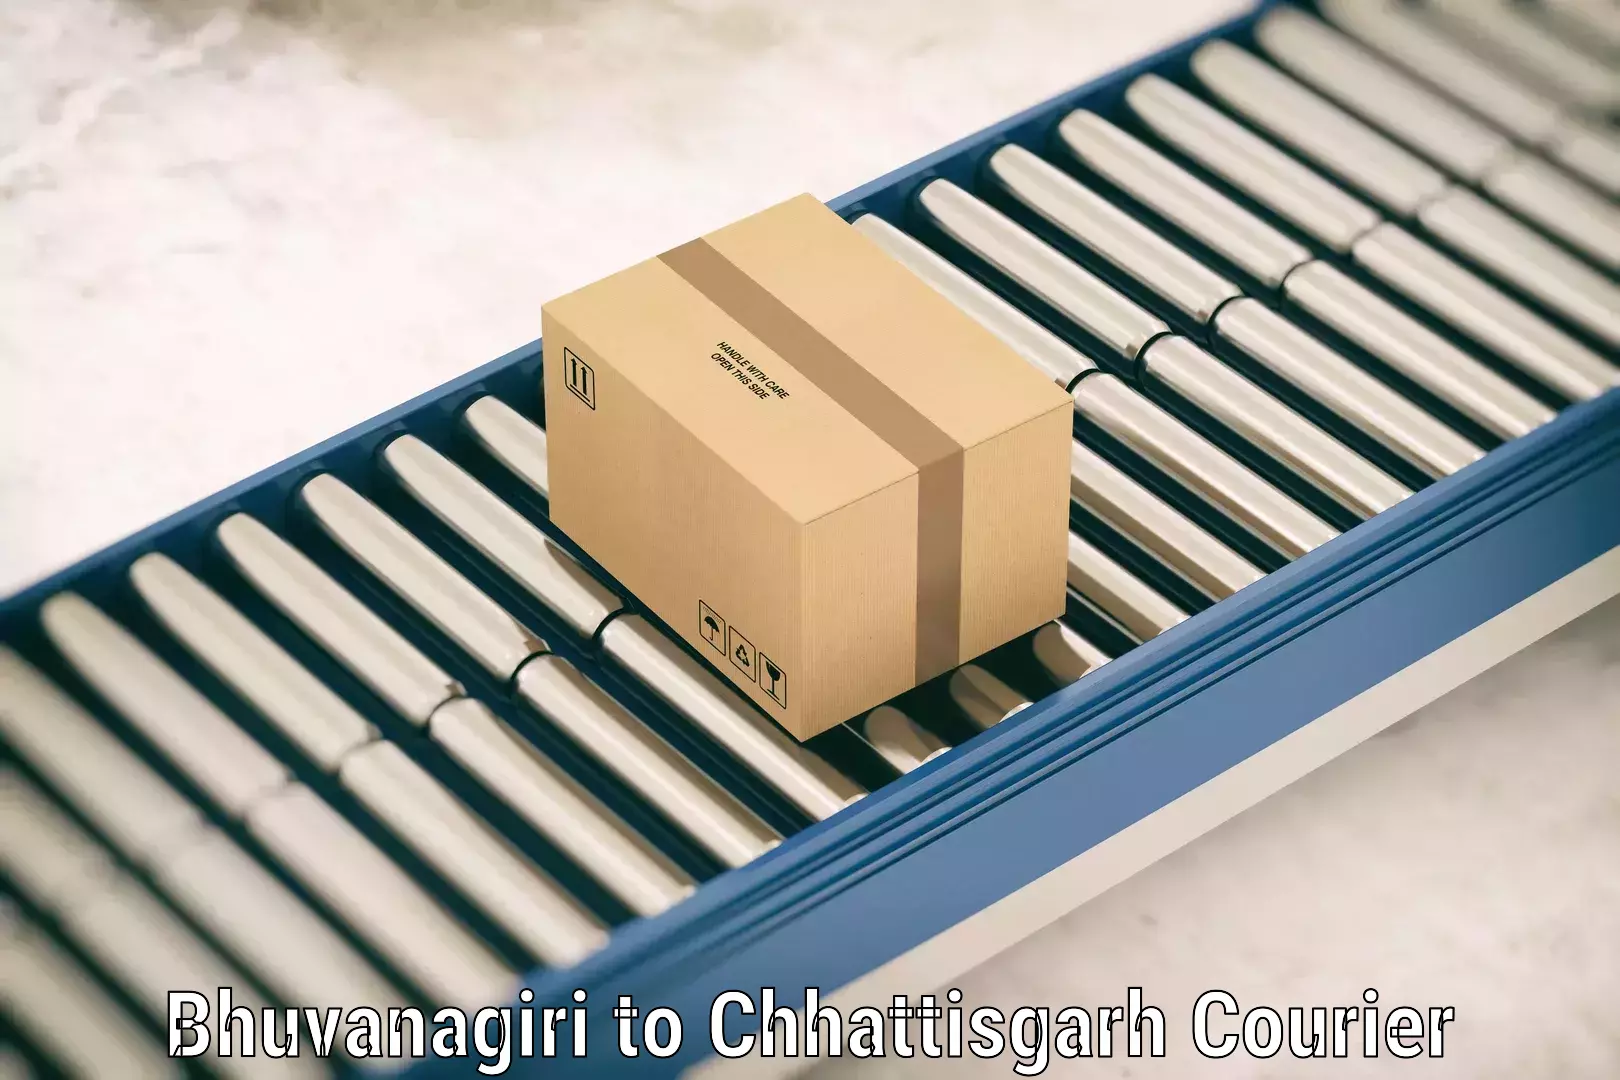 Baggage delivery planning Bhuvanagiri to Raigarh Chhattisgarh